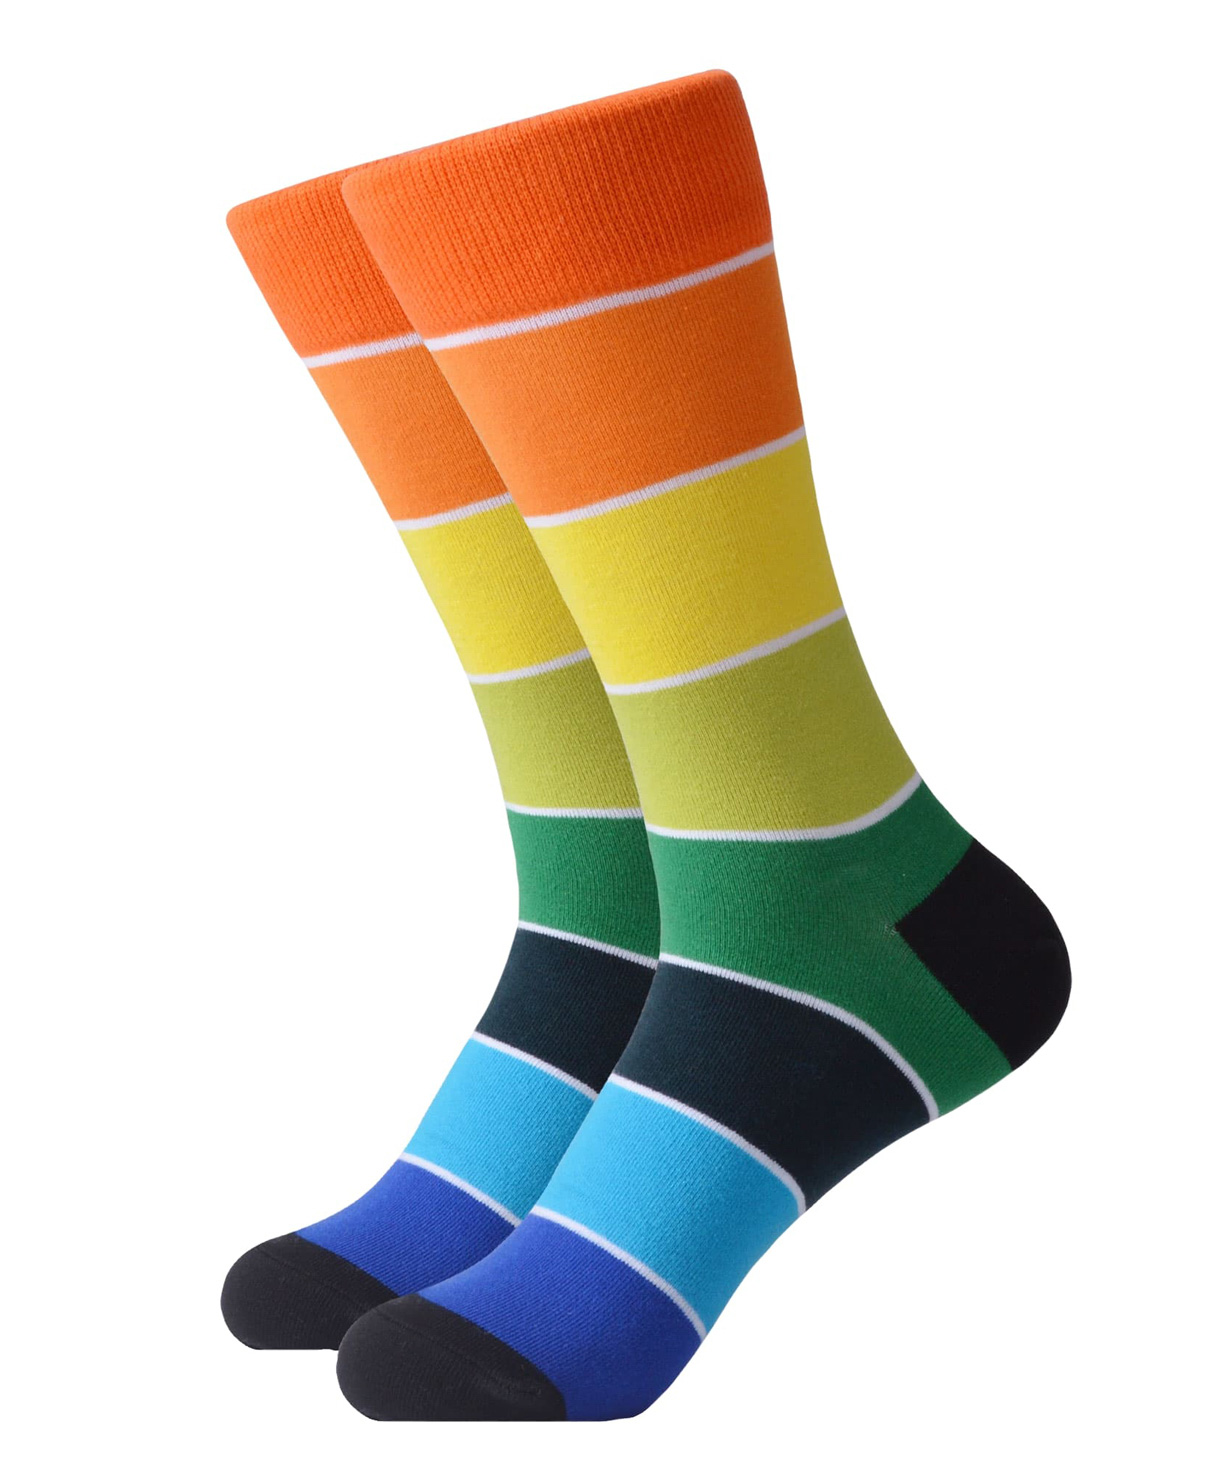 Գուլպաներ «Zeal Socks» գույներ №4